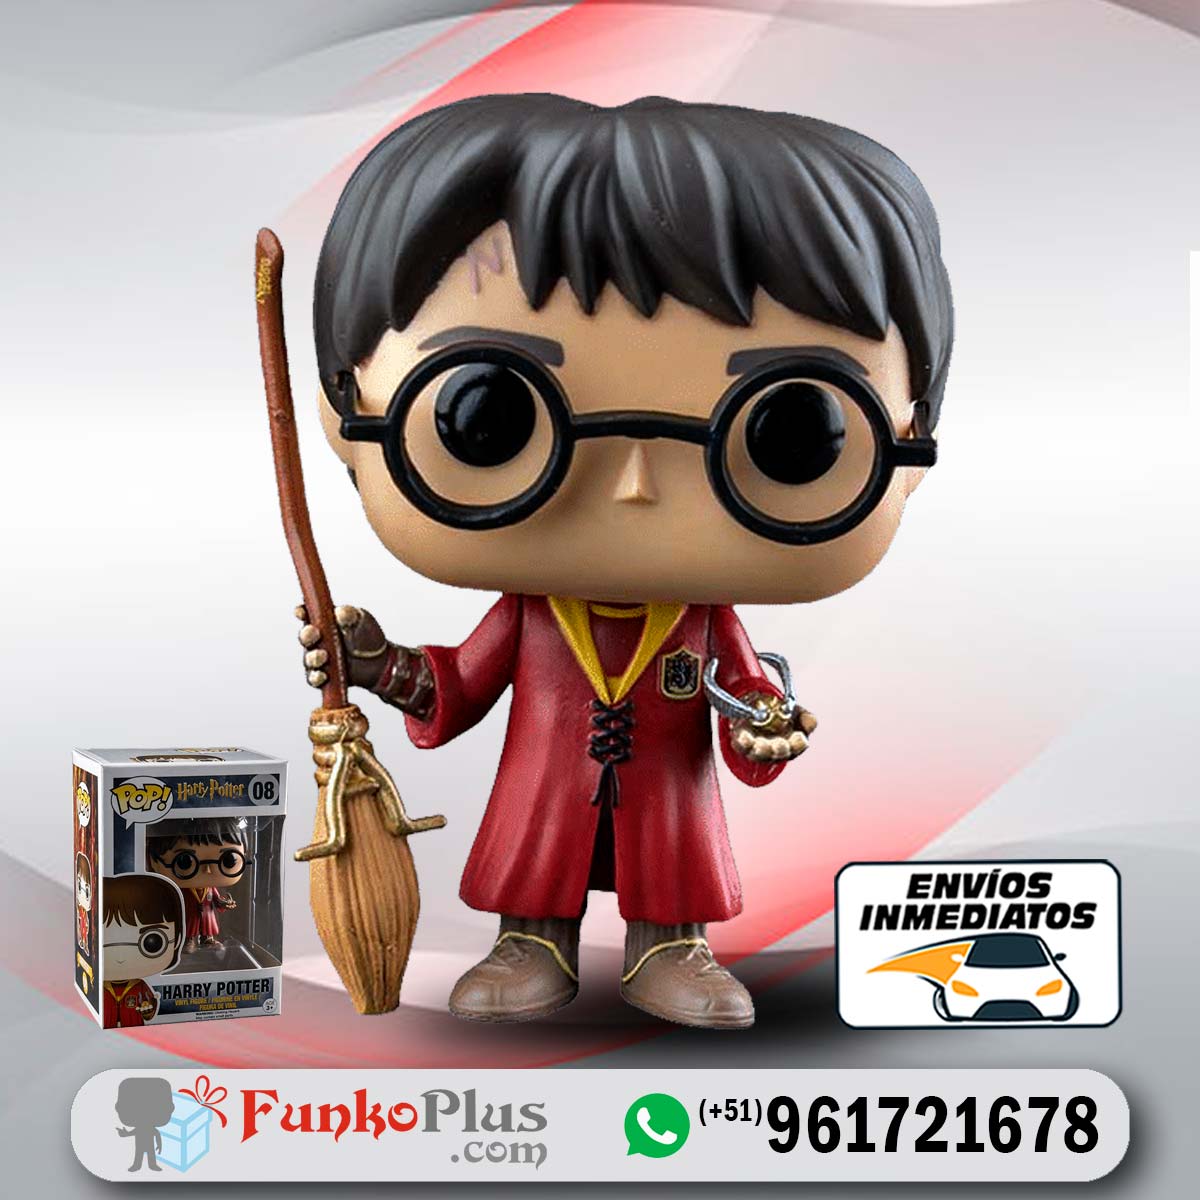 Llavero De Harry Potter - Quidditch - Funko Pocket Pop